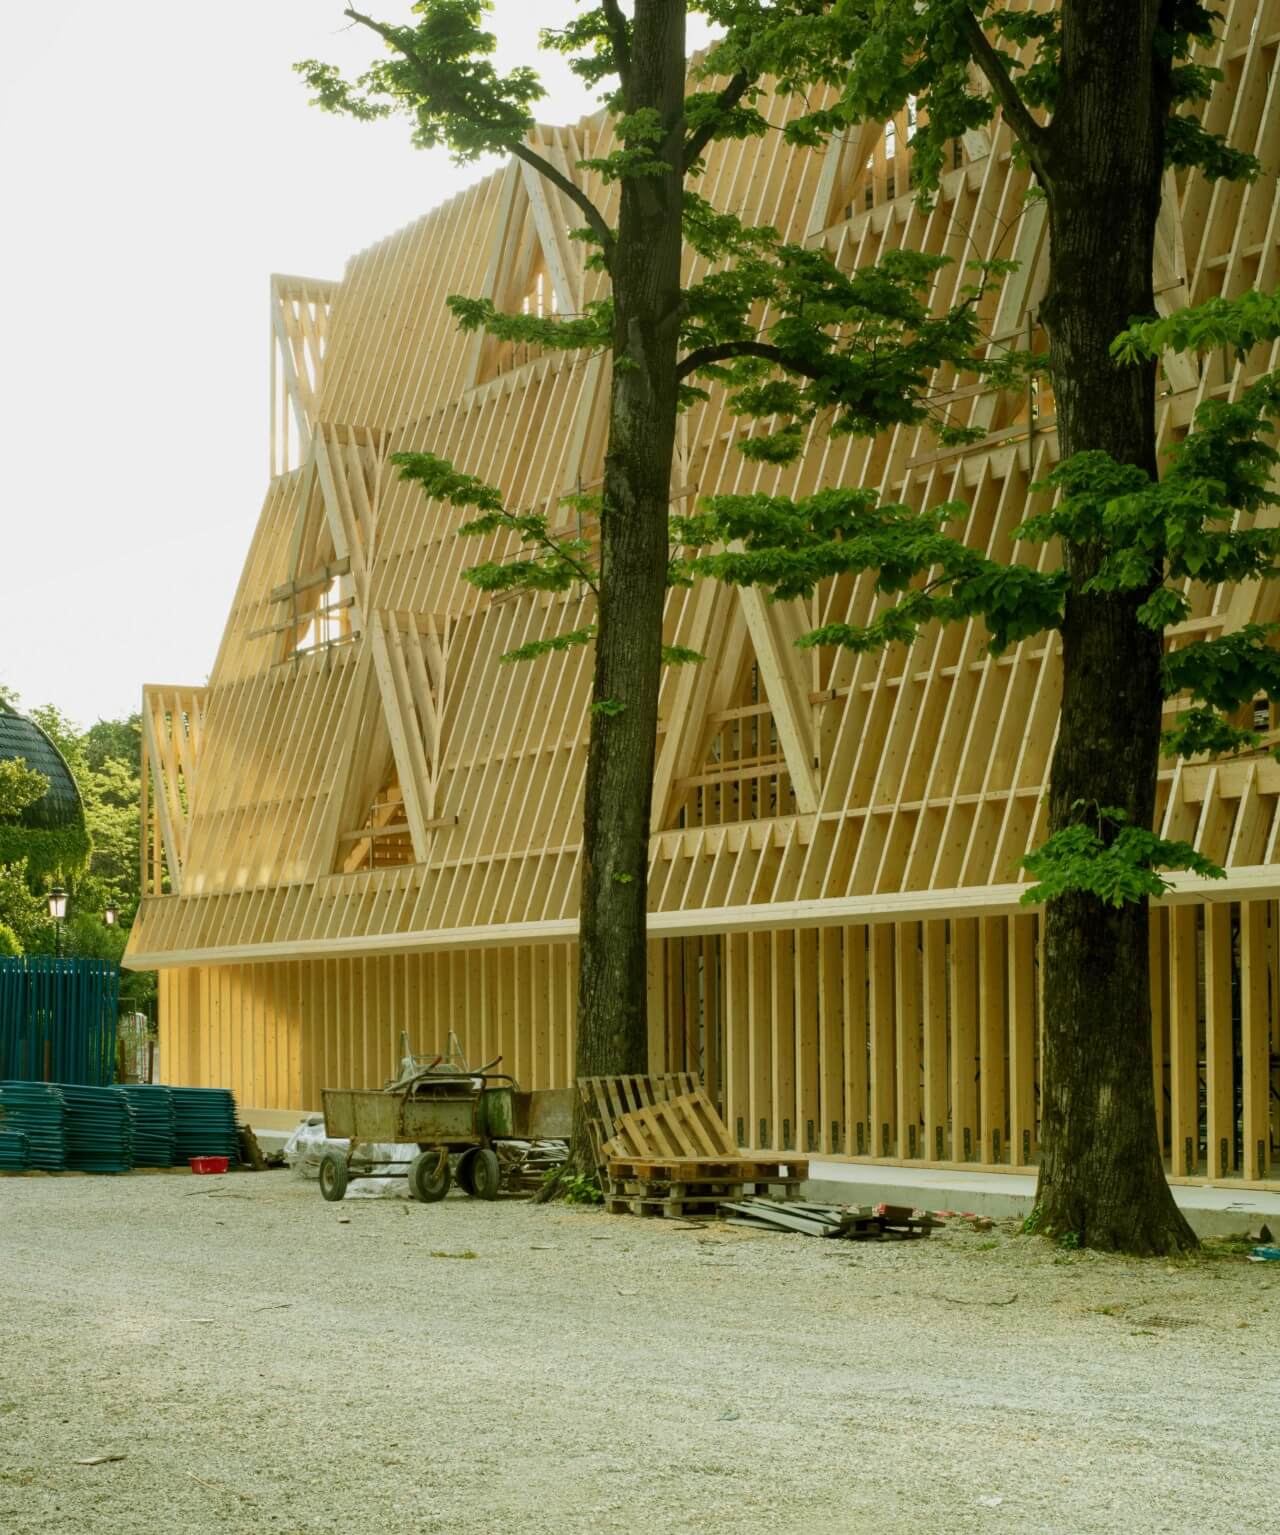 装置拍摄自2021年威尼斯建筑双年展，展示了一座三层木结构房屋